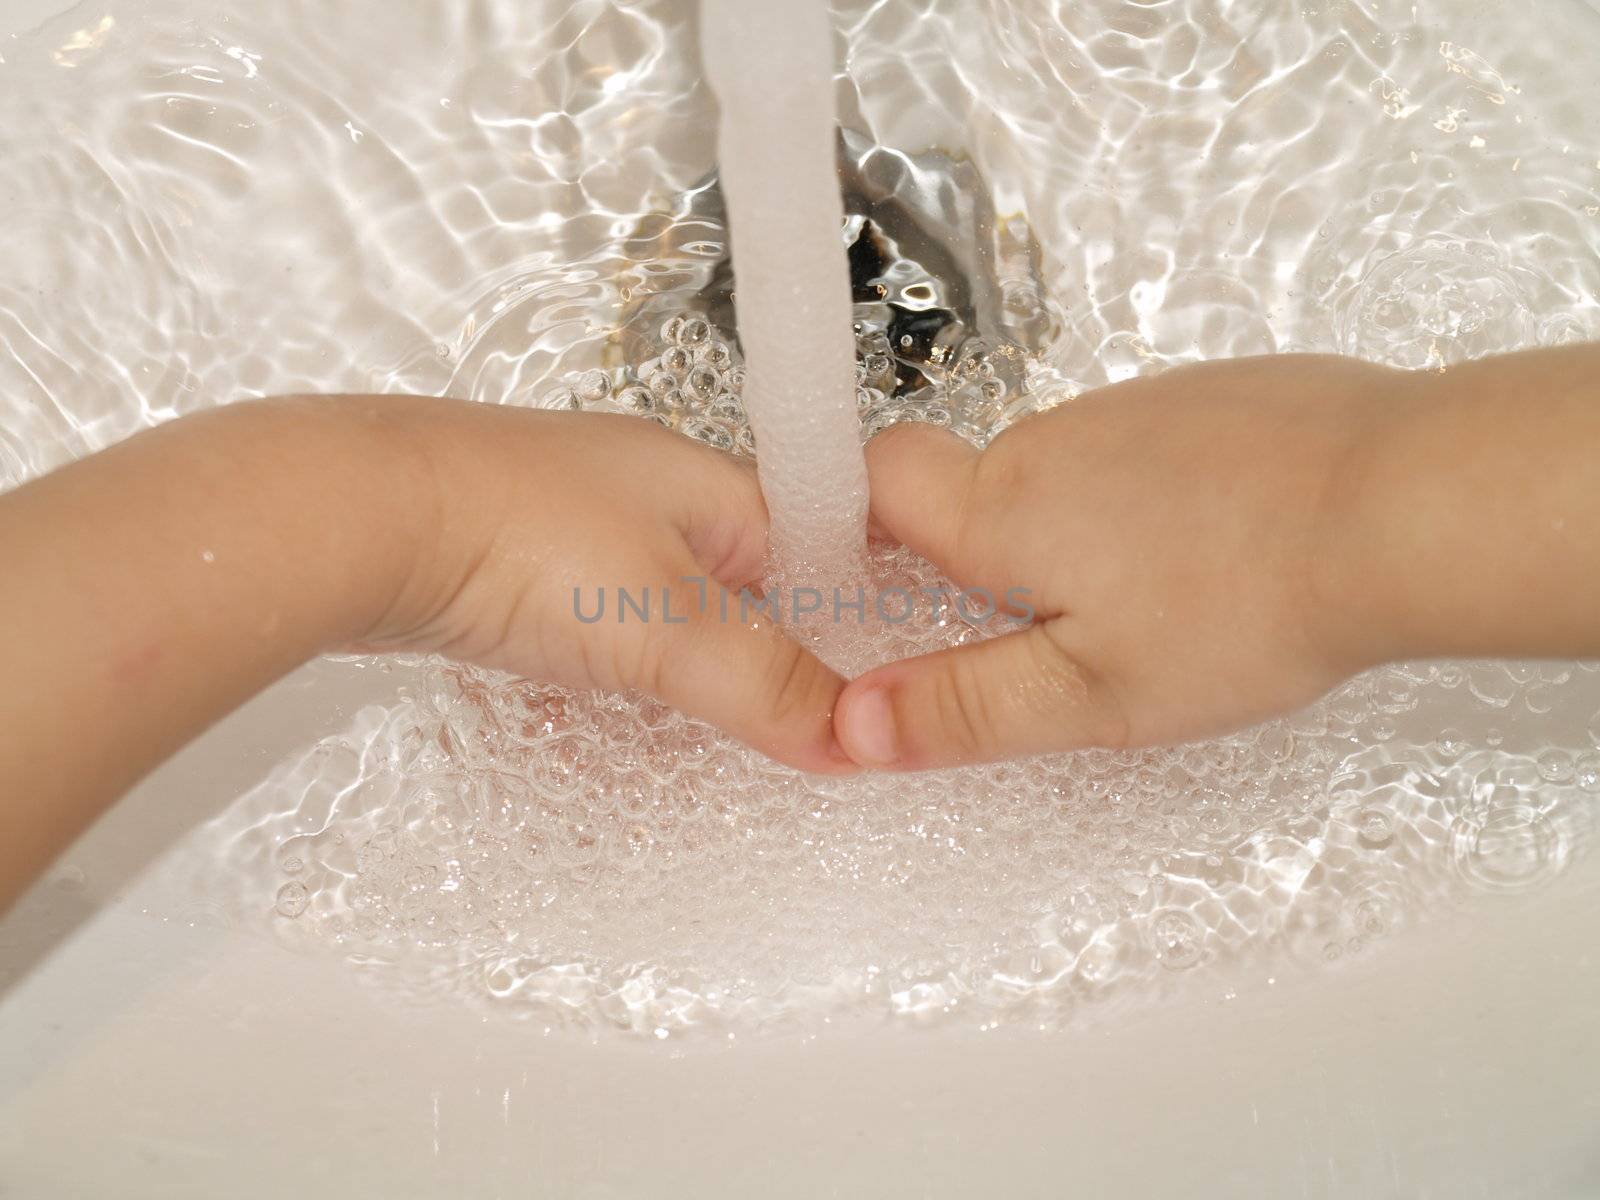 child washing hands by viviolsen